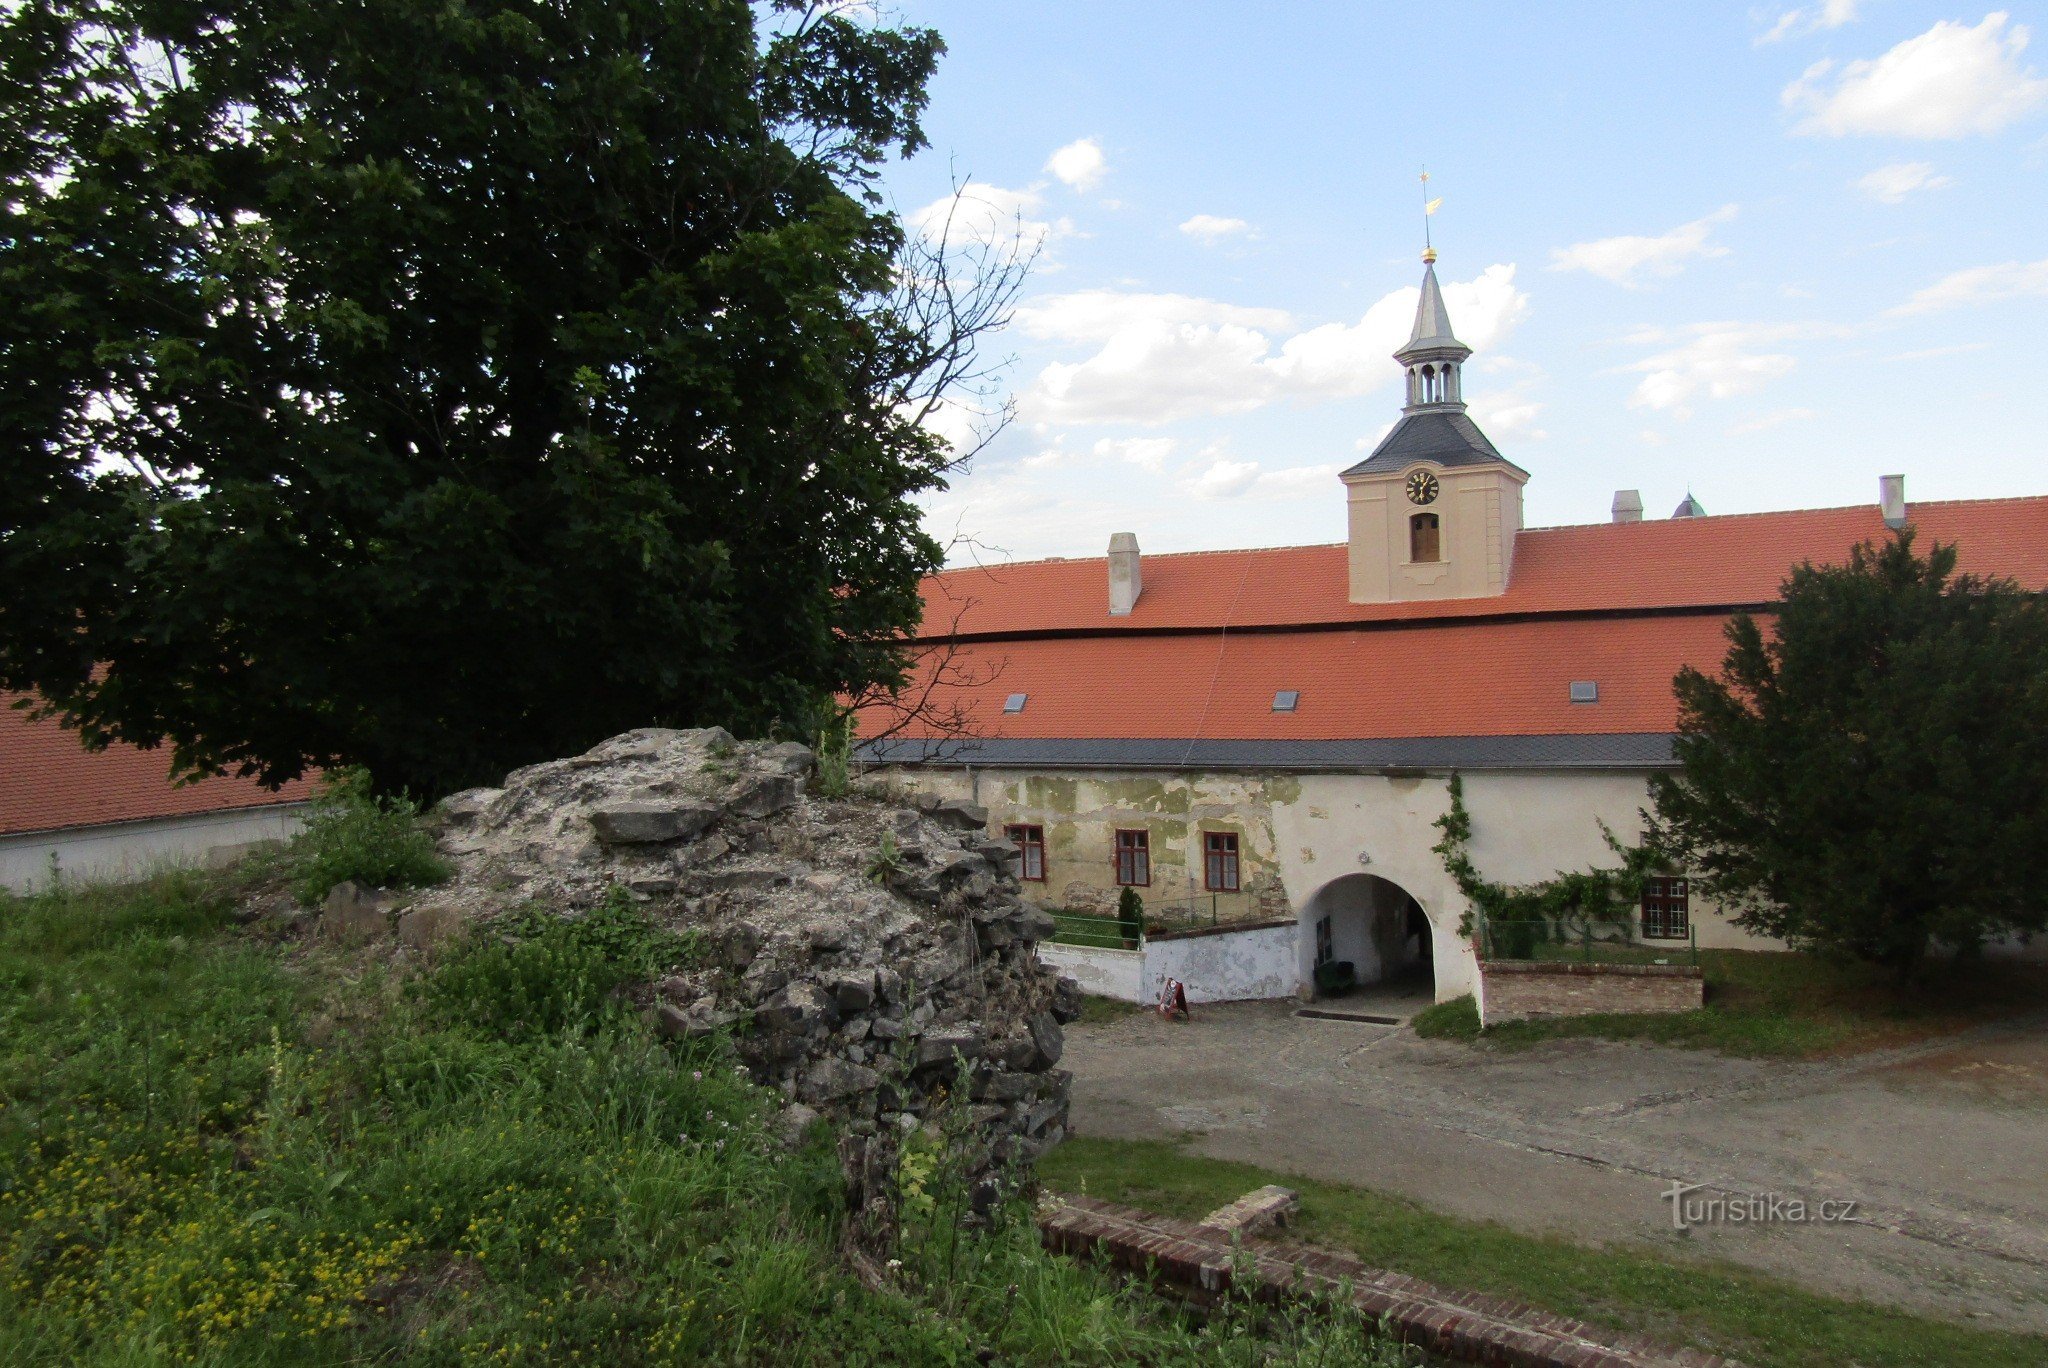 L'incontournable château de Plumlov